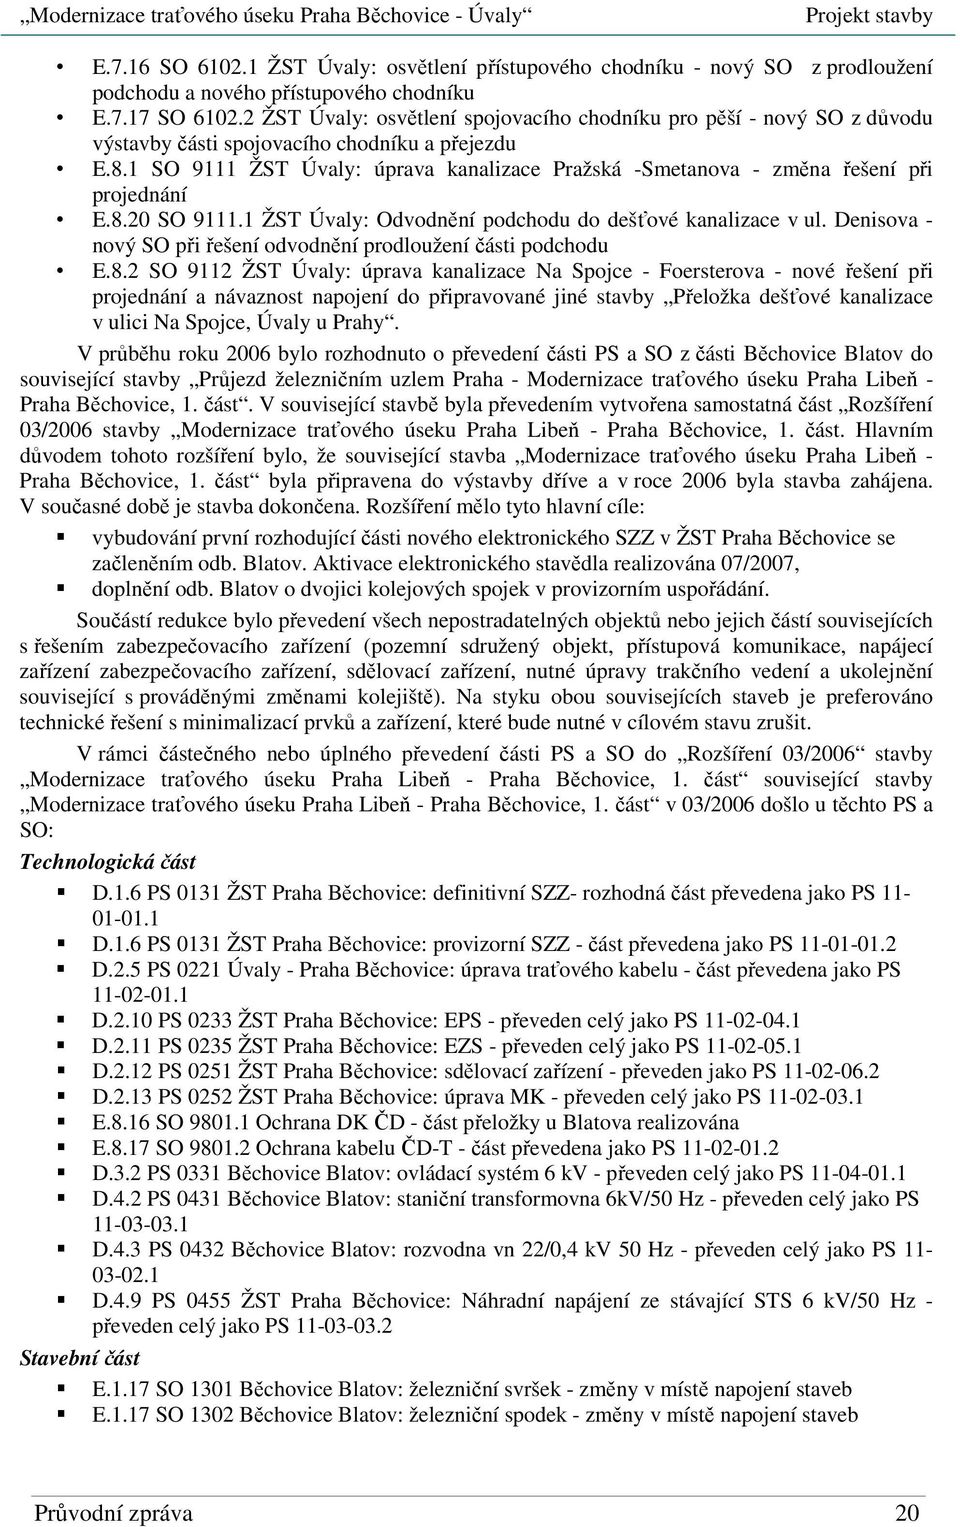 1 SO 9111 ŽST Úvaly: úprava kanalizace Pražská -Smetanova - změna řešení při projednání E.8.20 SO 9111.1 ŽST Úvaly: Odvodnění podchodu do dešťové kanalizace v ul.